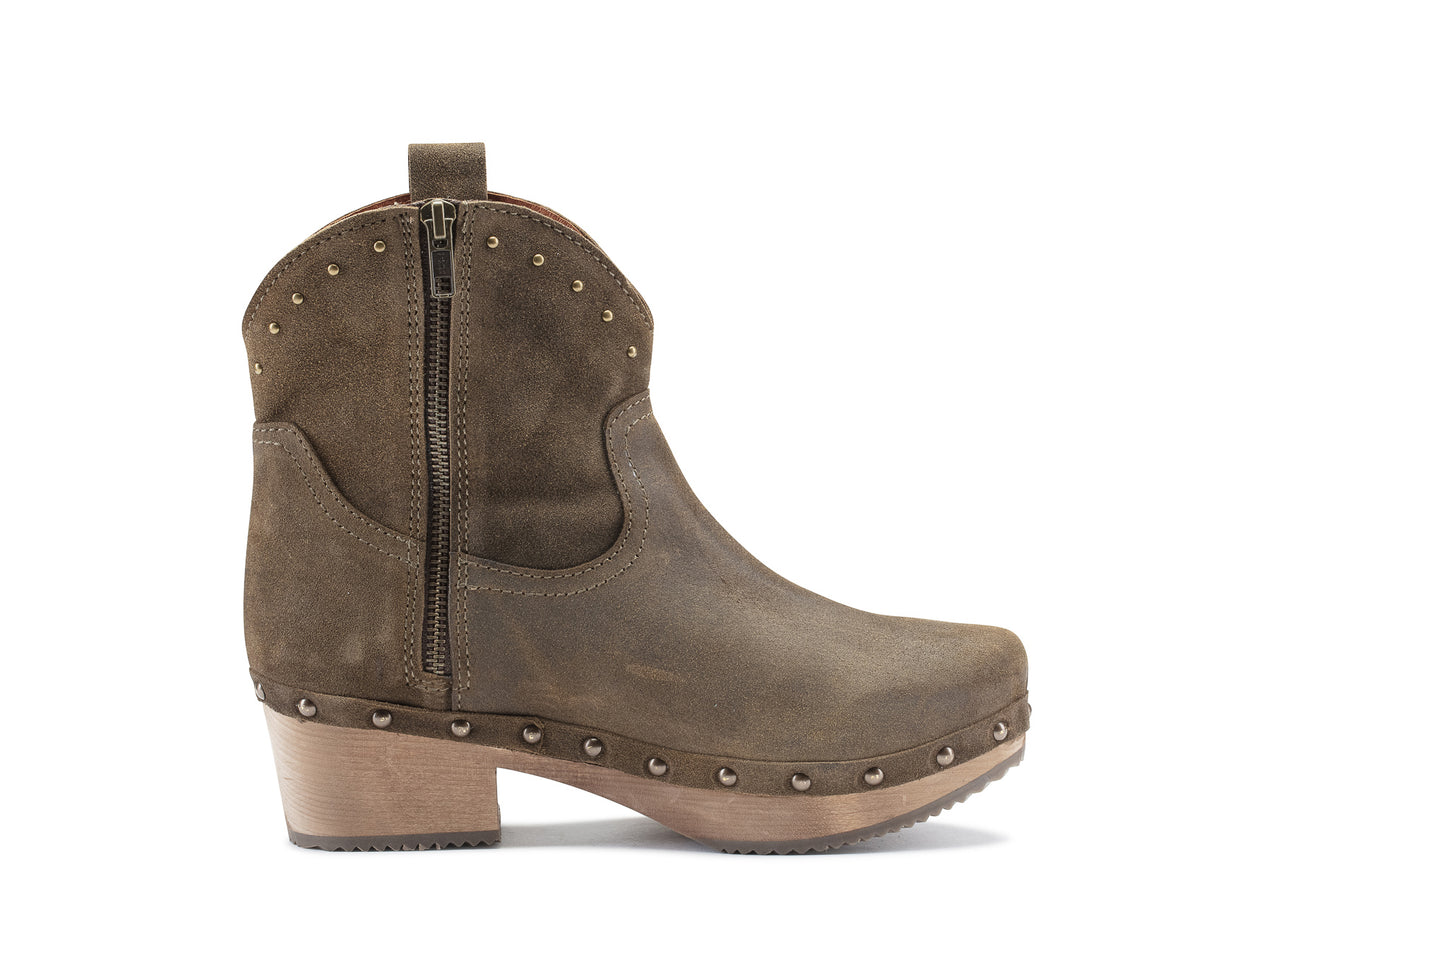 Boot with wooden heel